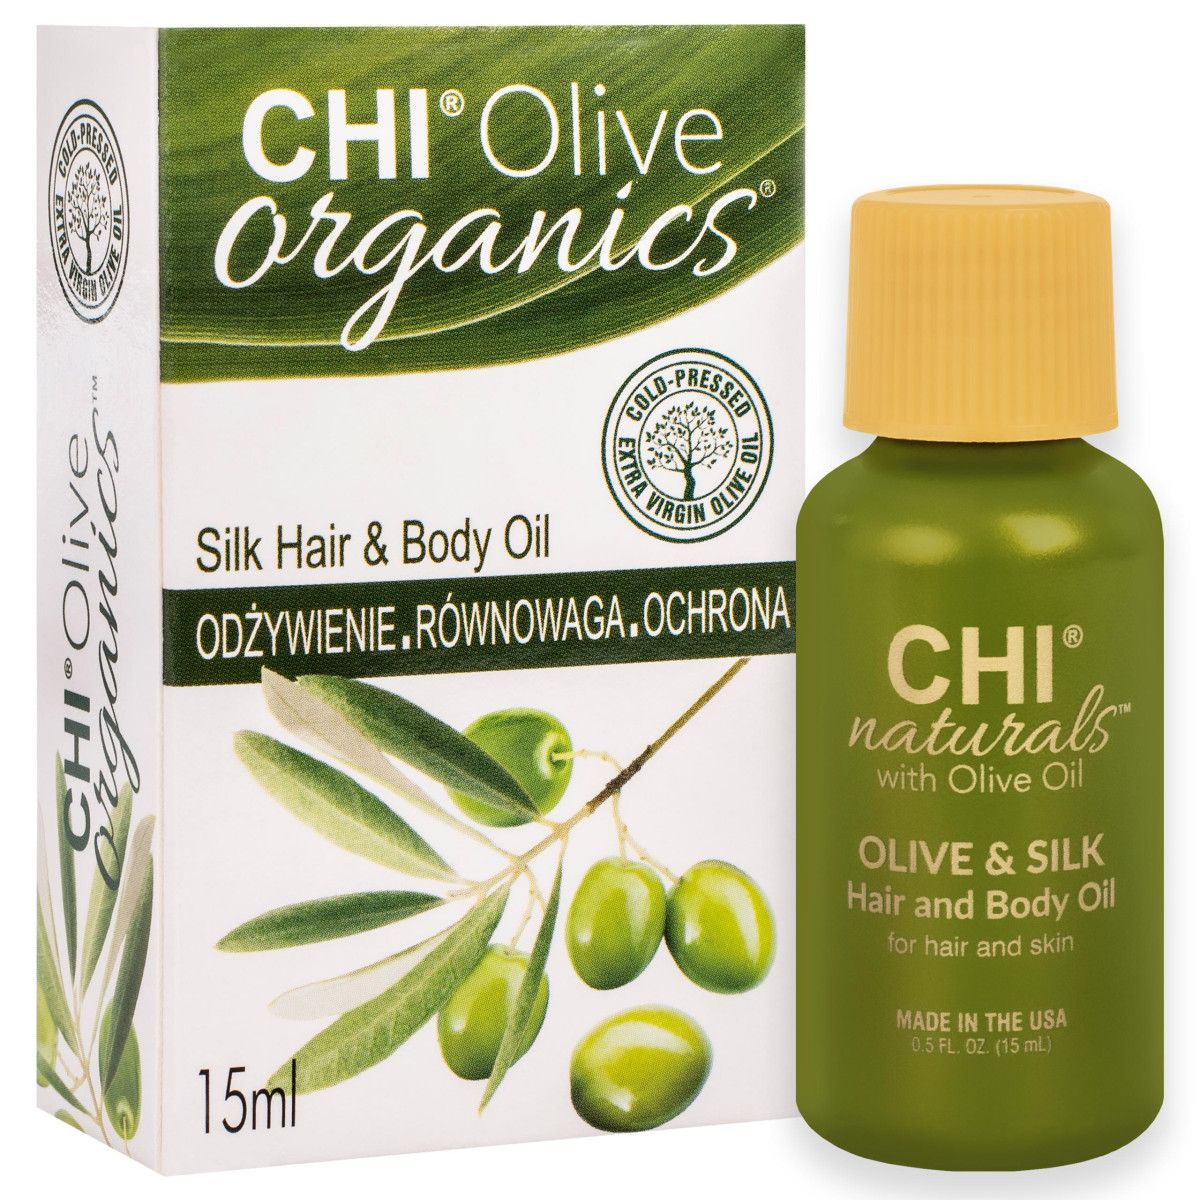 CHI Olive Organics Hair and Body Oil oliwka do włosów 15ml